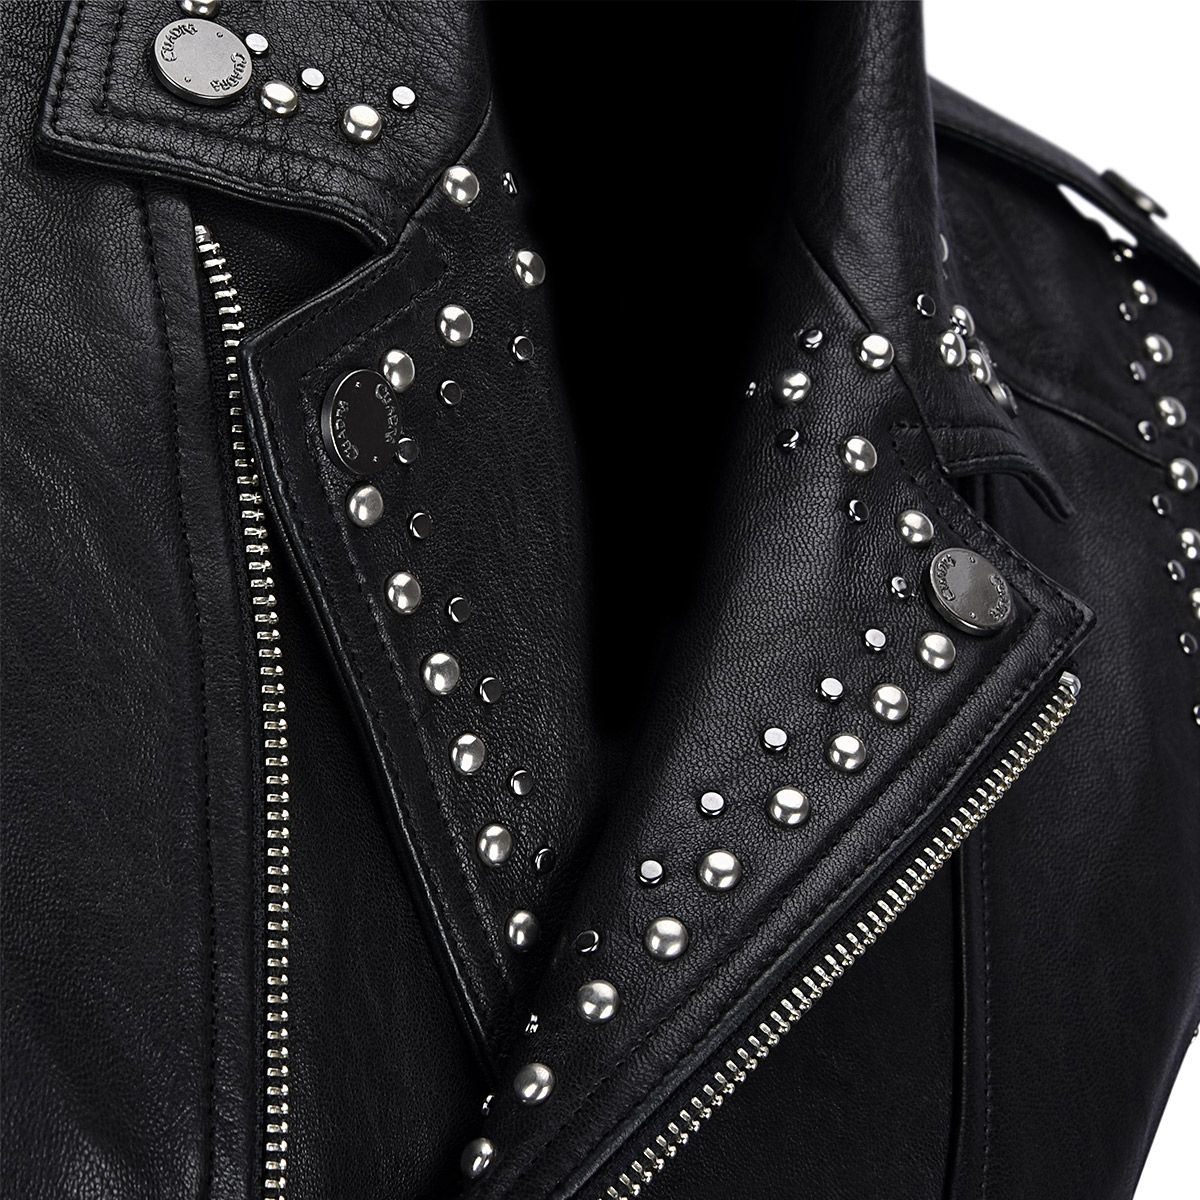 M286COC - Cuadra black dress fashion cowhide leather vest for women-Kuet.us